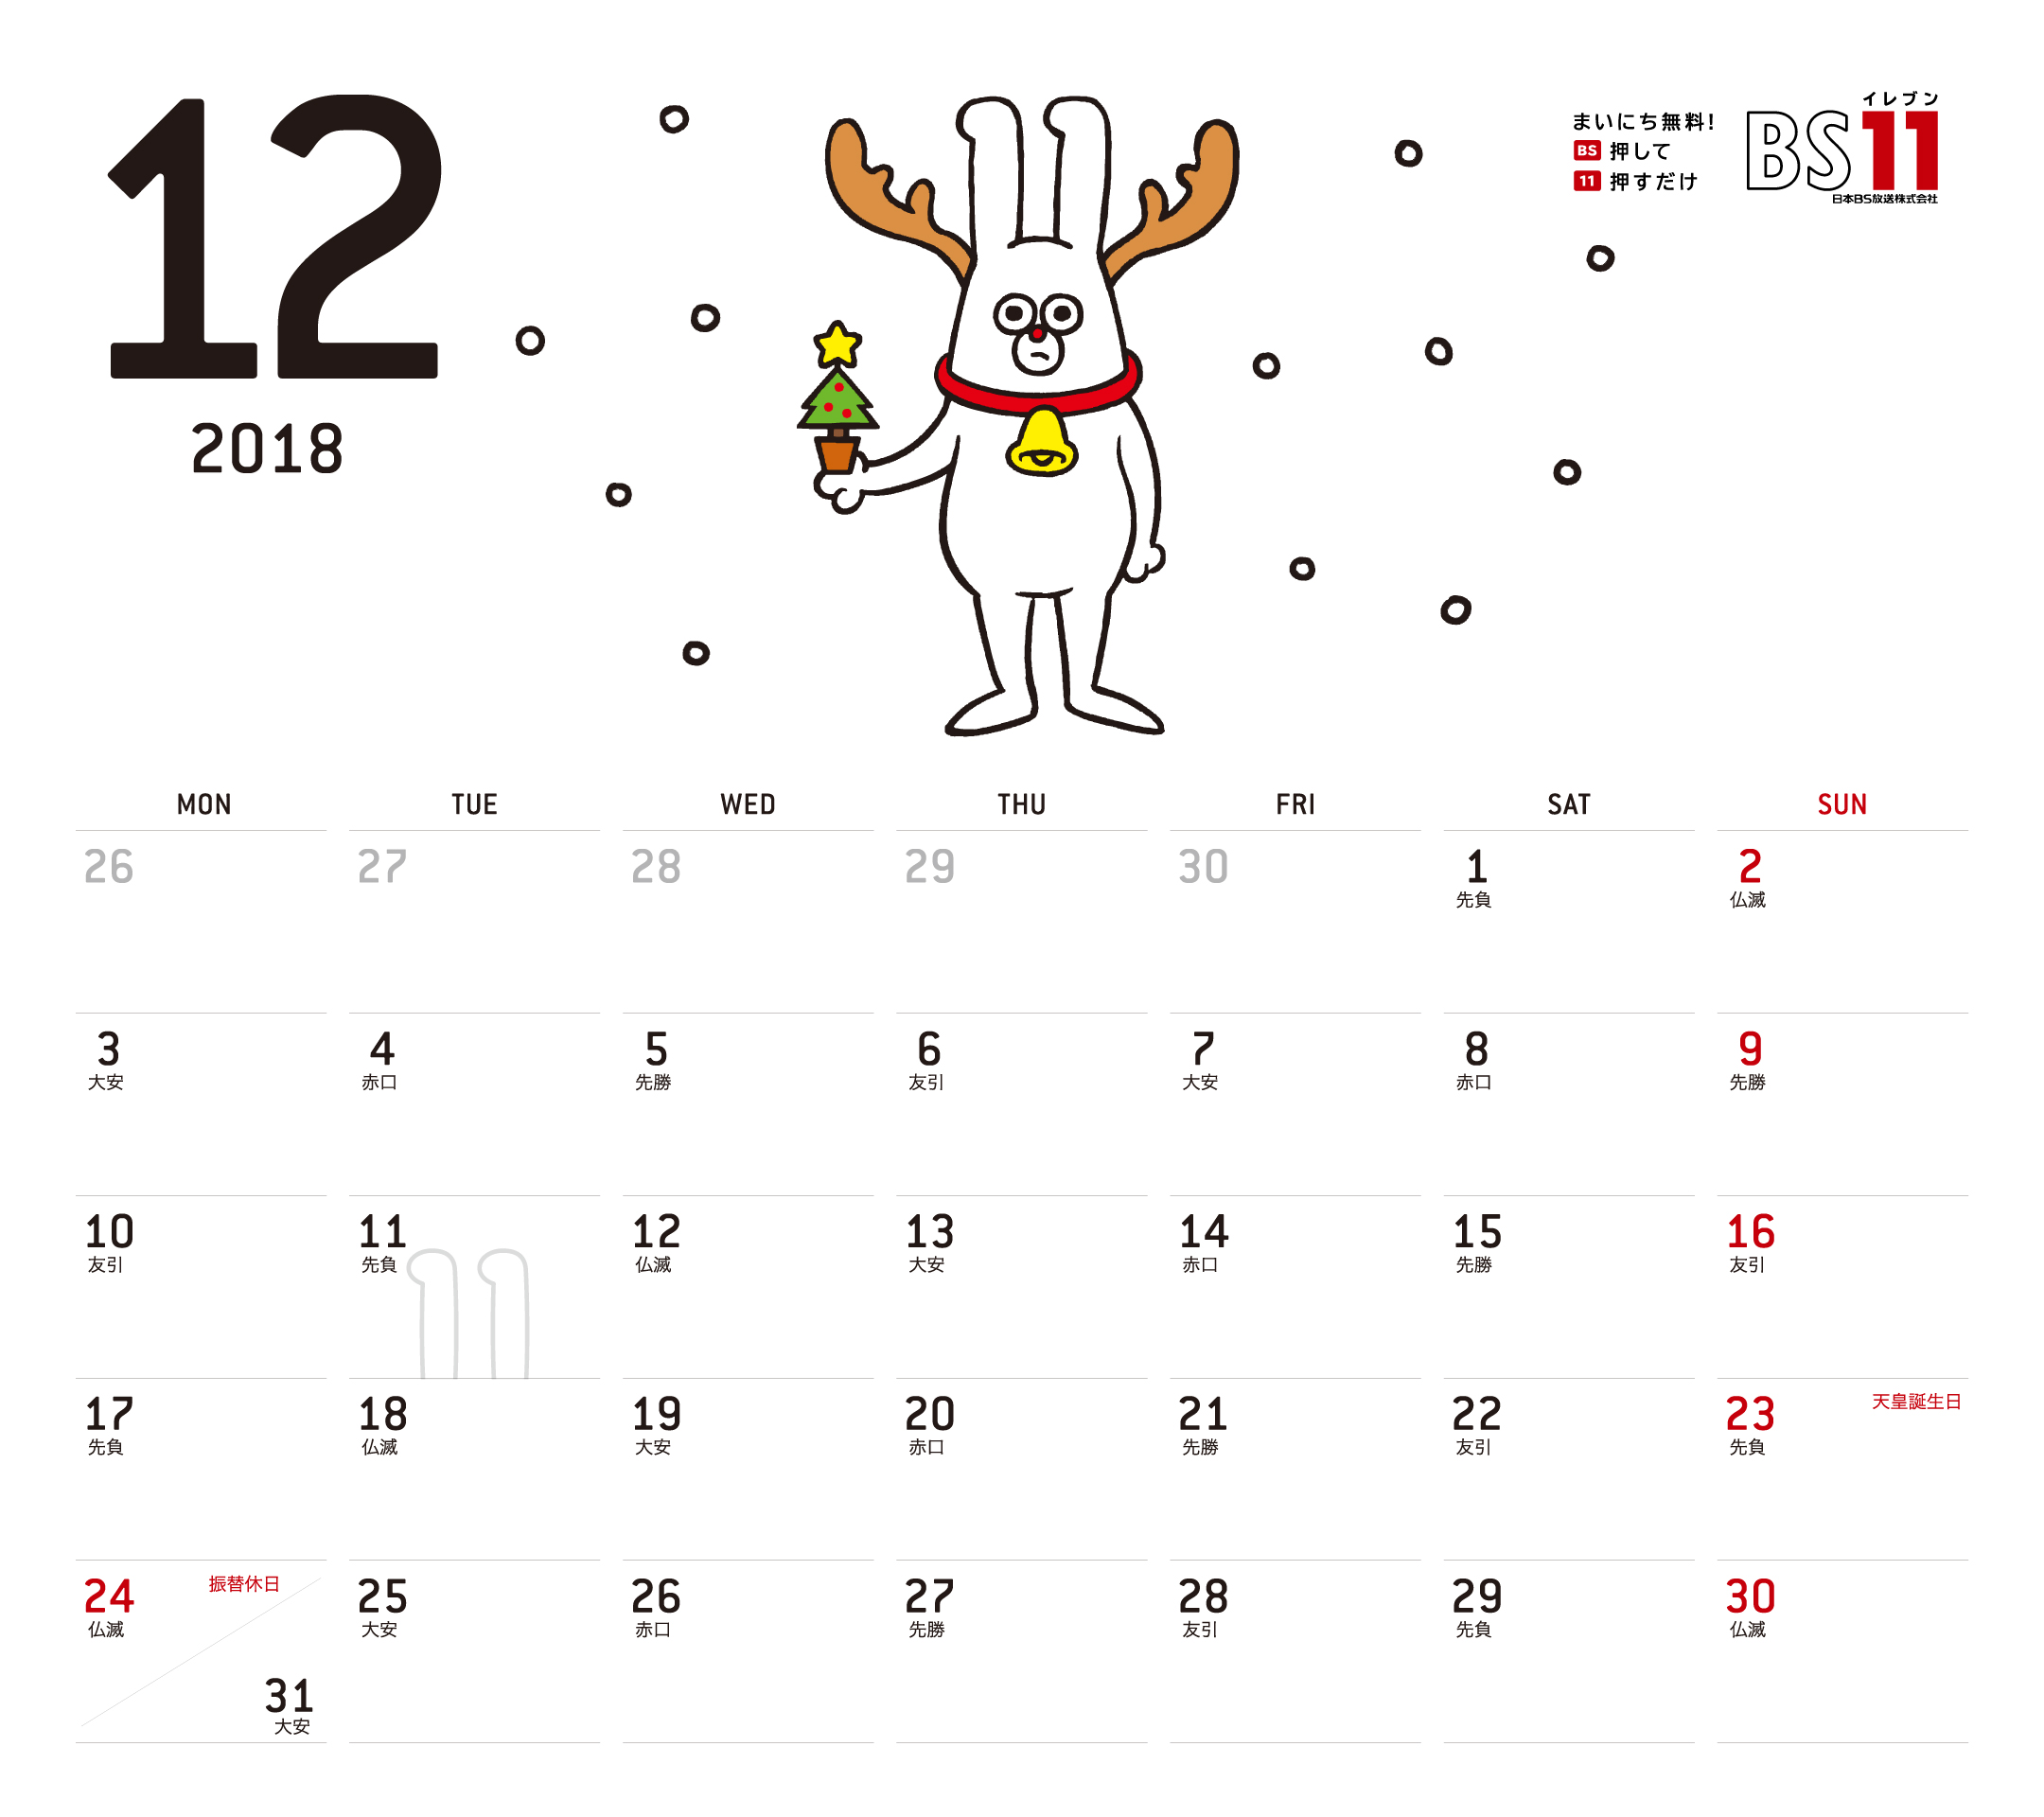 Spデジタルカレンダー2018年12月 Bs11 イレブン いつでも無料放送